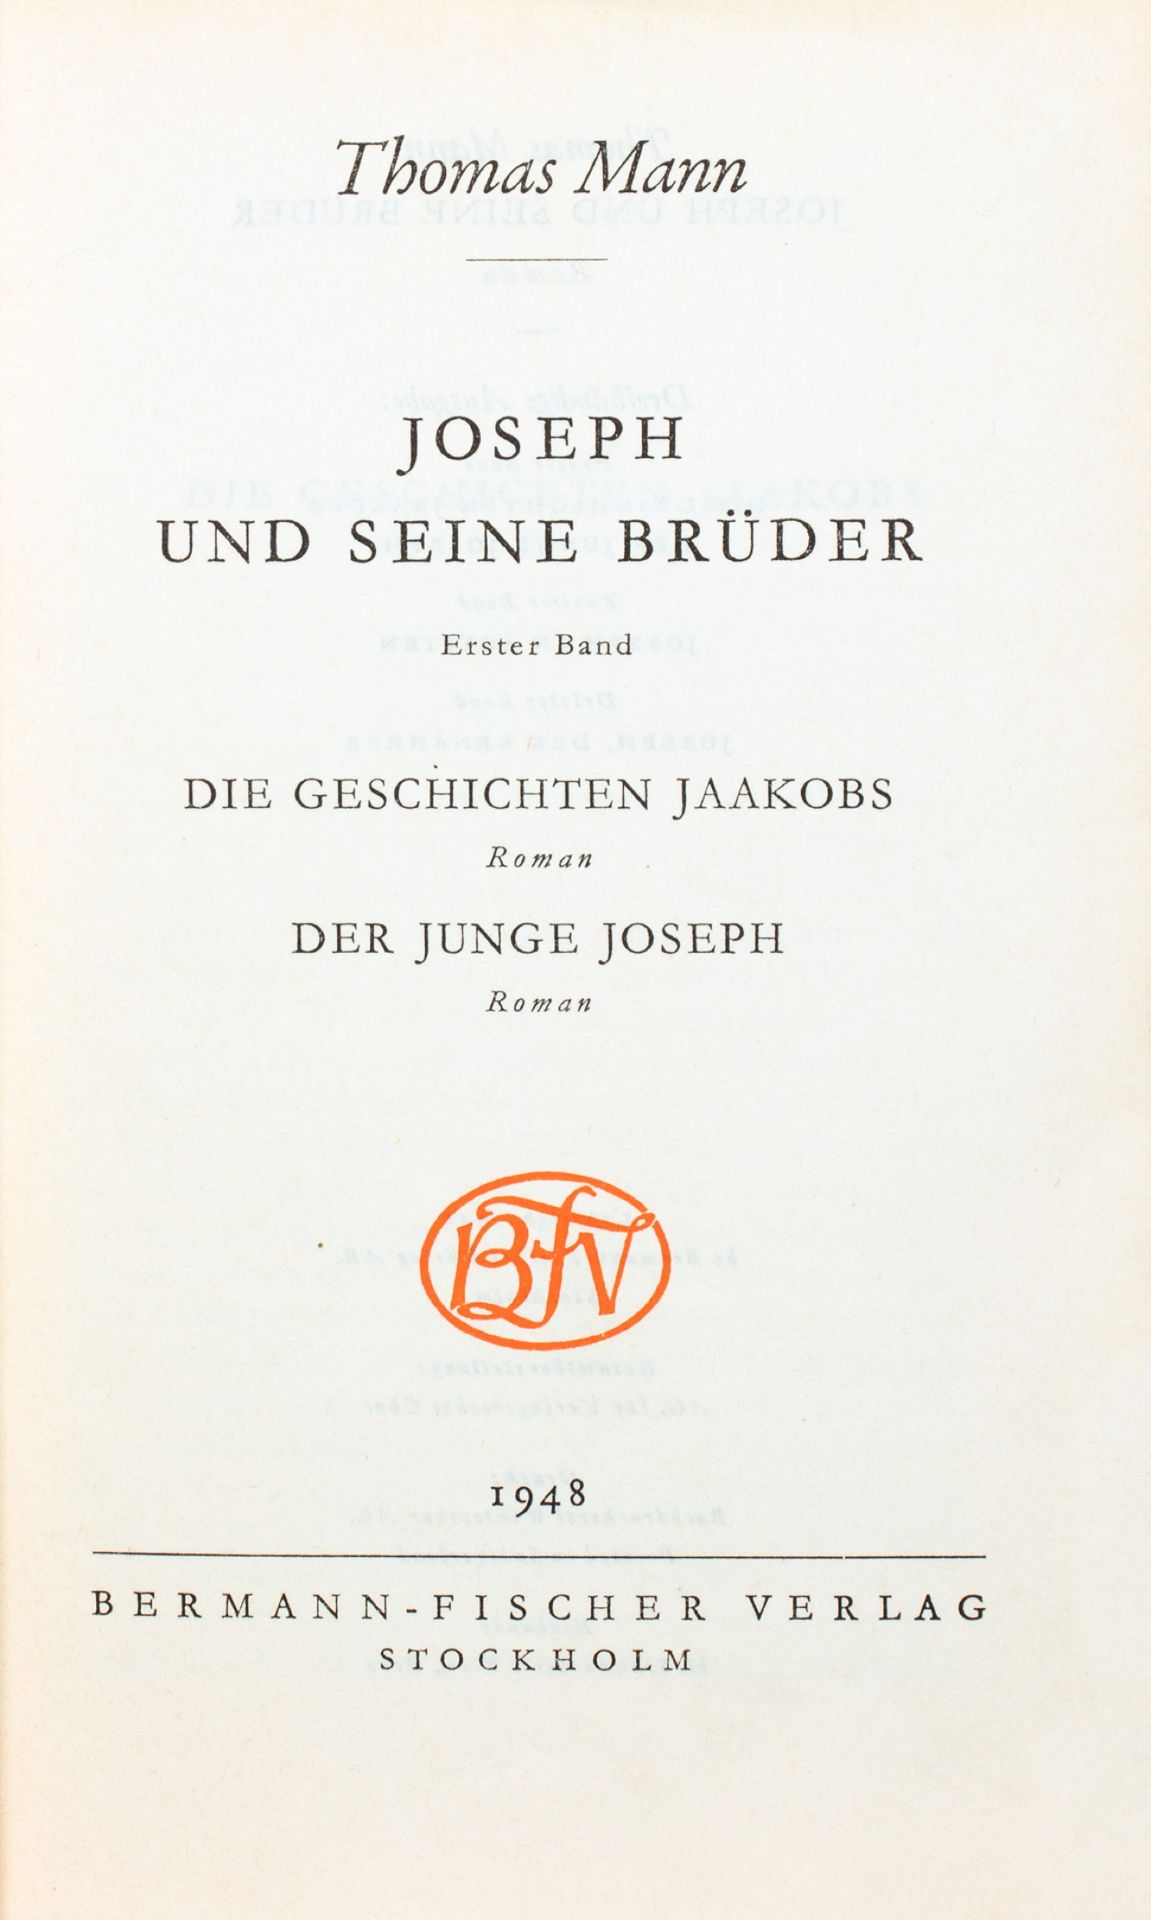 Thomas Mann. Joseph und seine Brüder. - Image 2 of 2